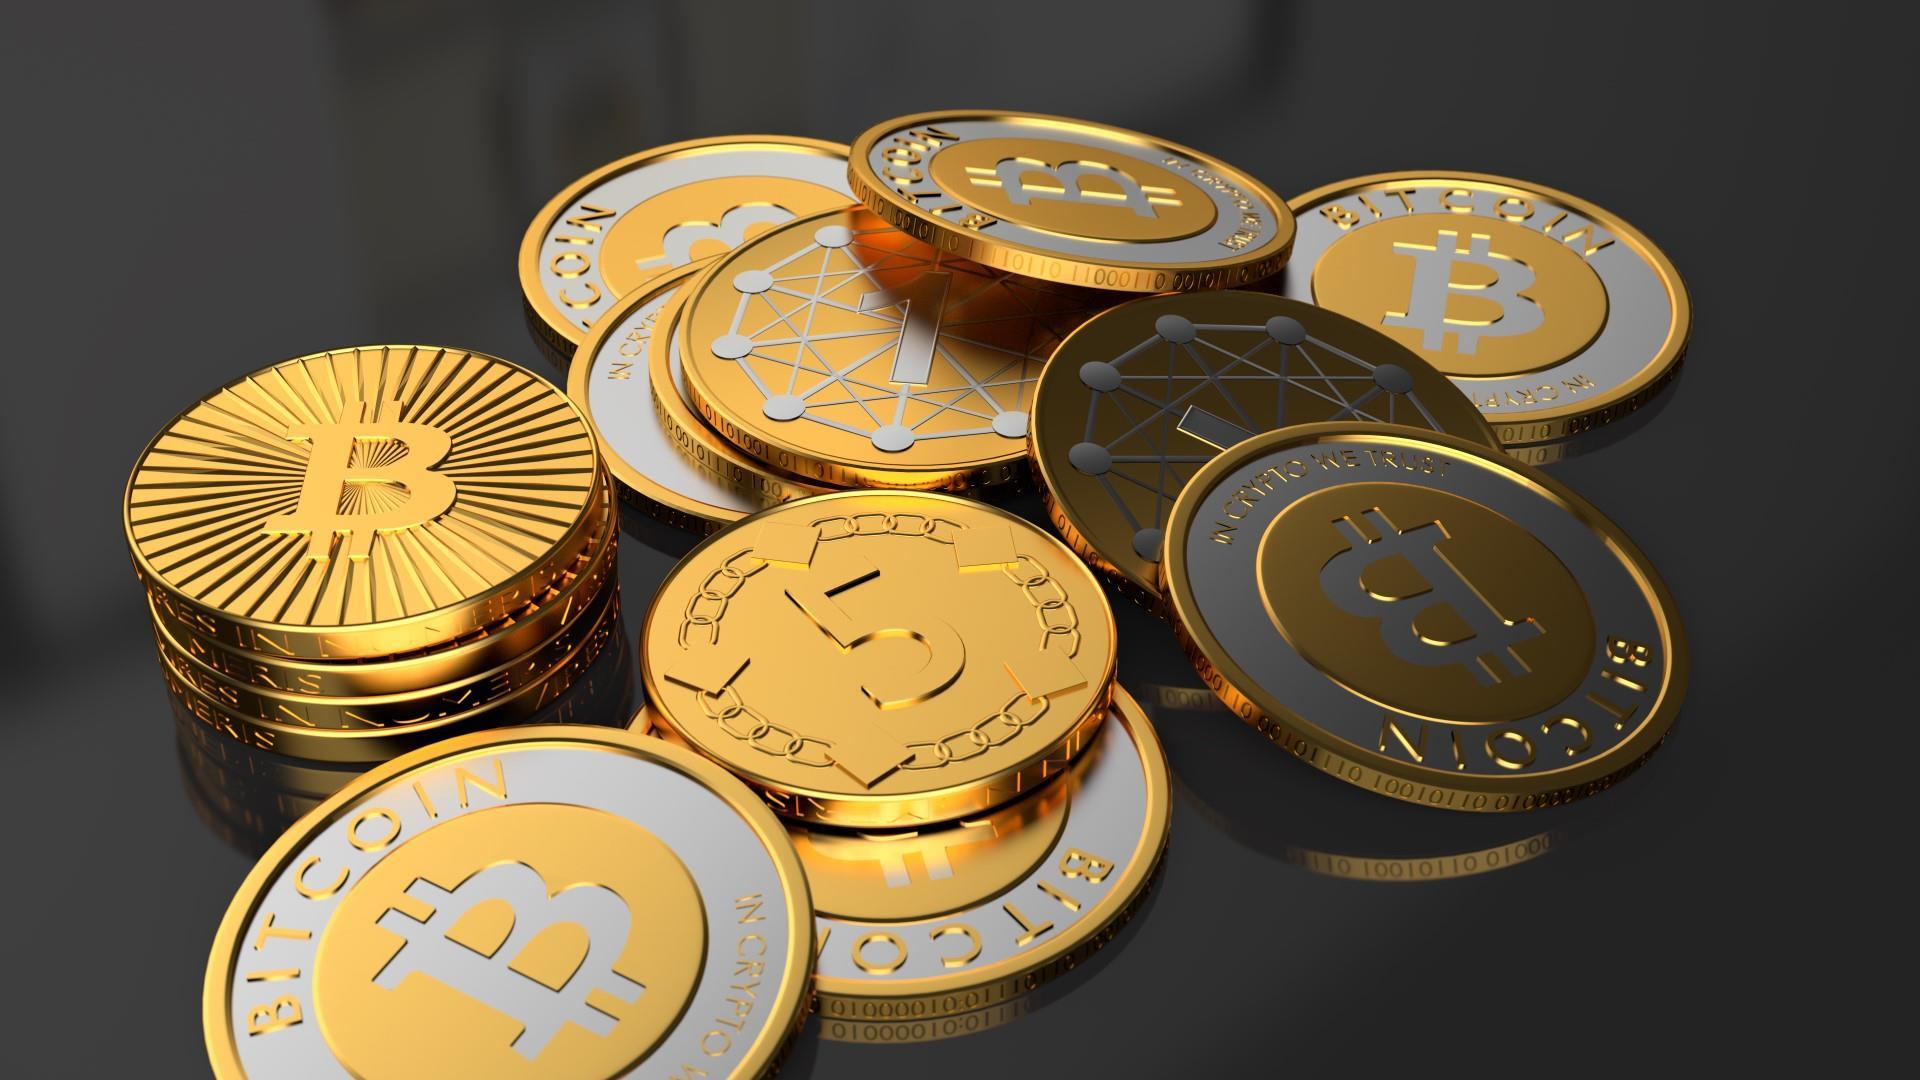 O preço de um Bitcoin é de US$ 23.400, com um volume de negociação de 24 horas de US$ 17 bilhões